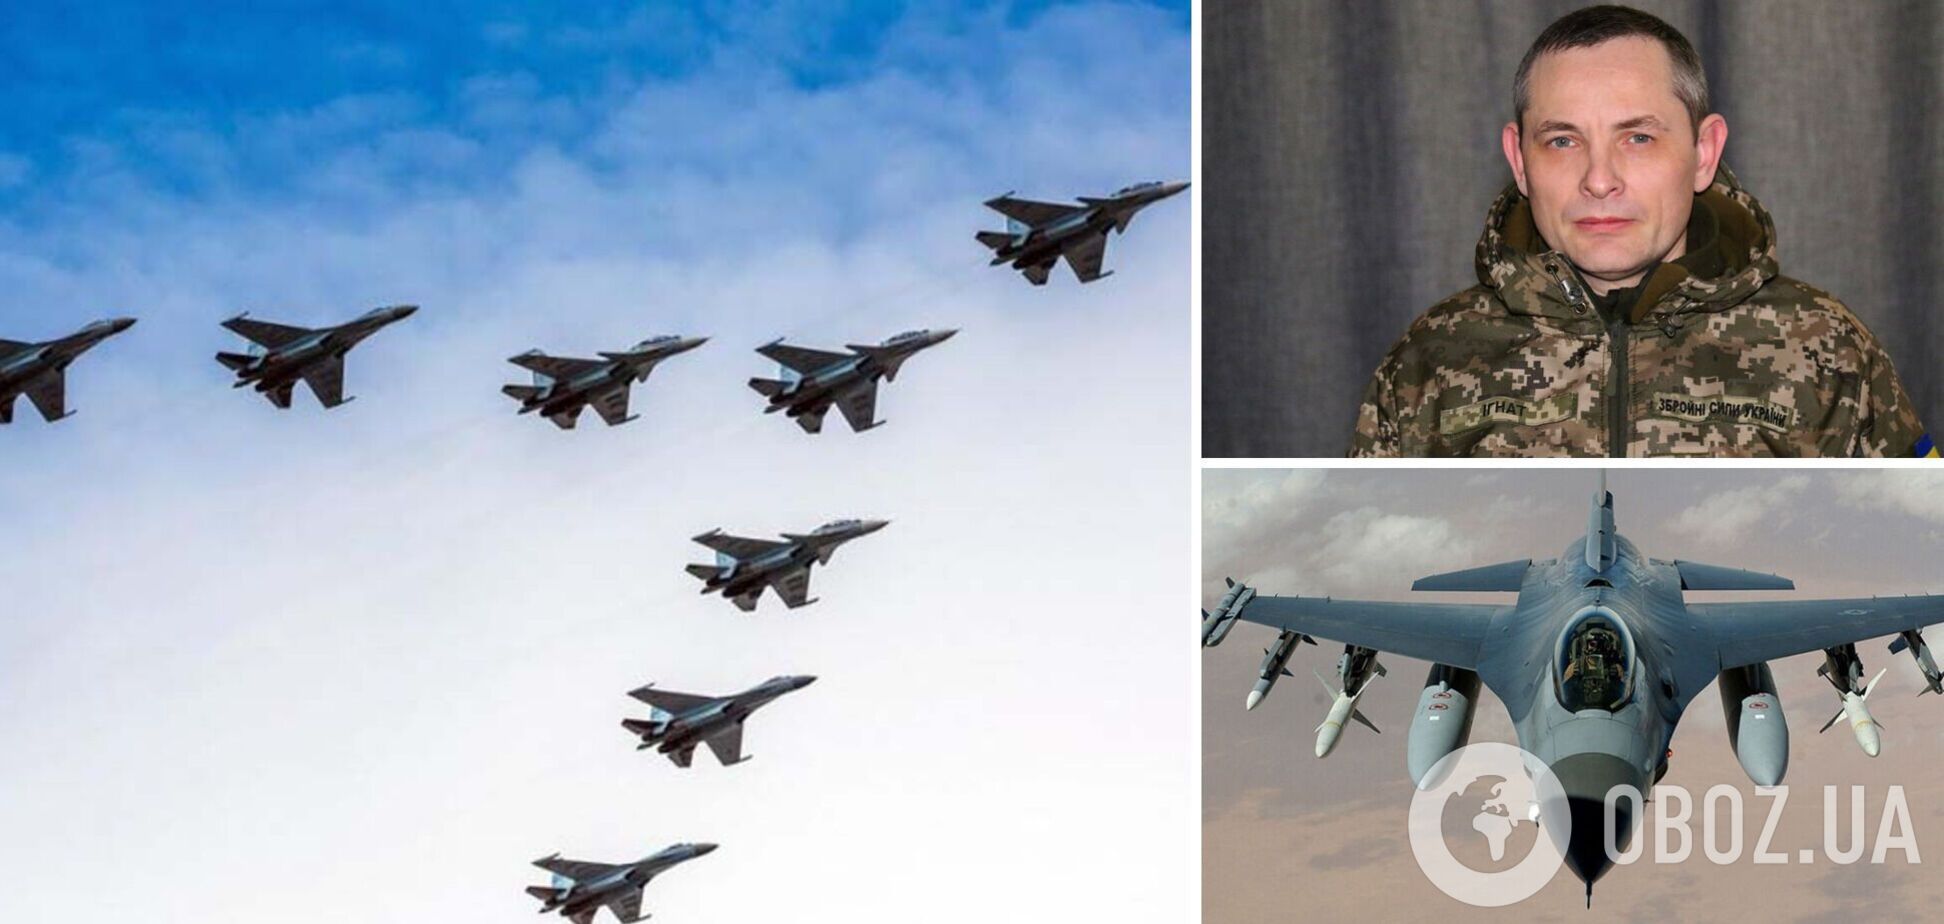 Тип літаків, який союзники передадуть Україні, вже визначено: Ігнат розповів про підсилення української авіації 